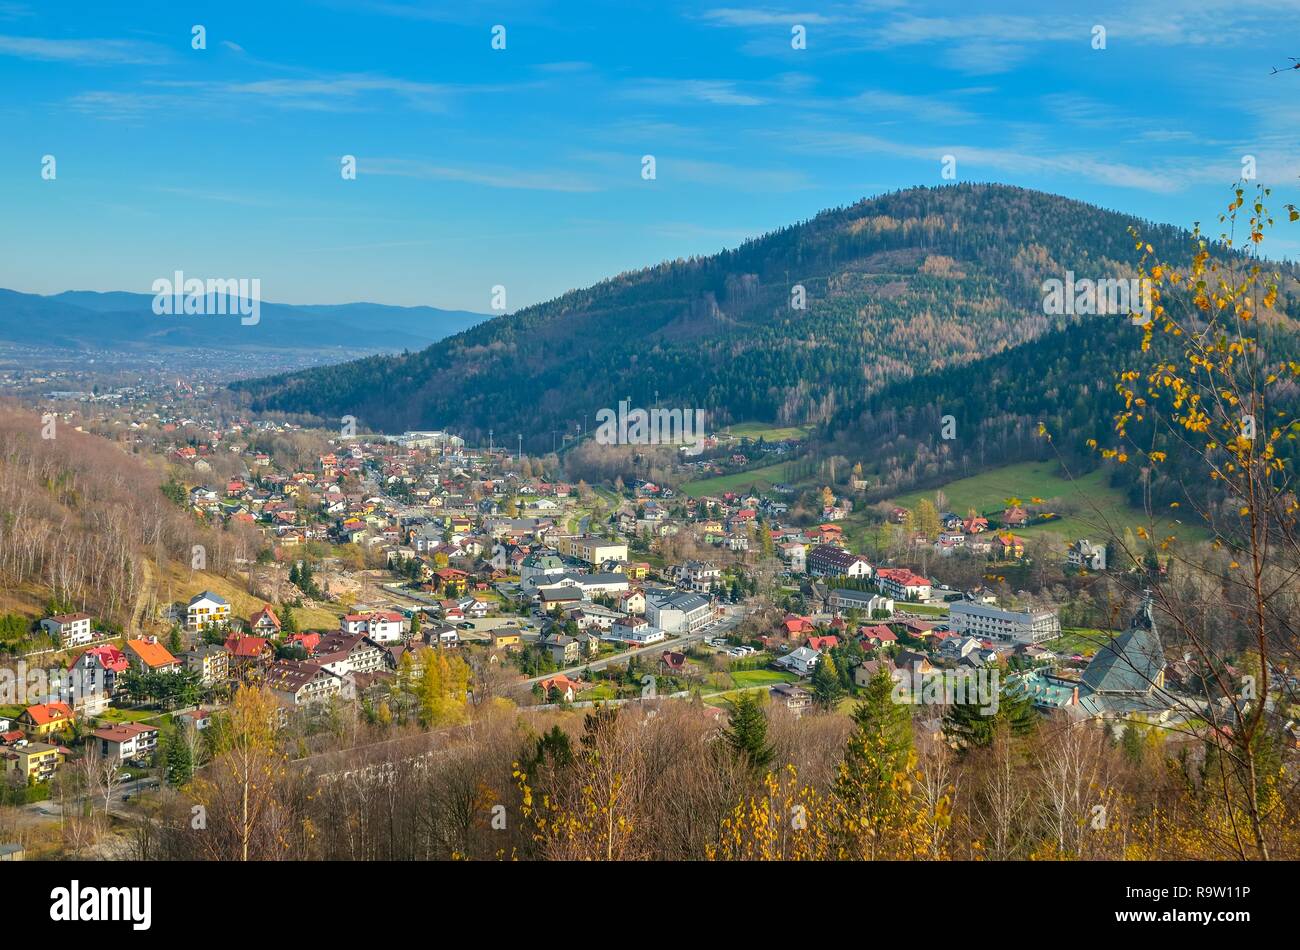 SZCZYRK, POLAND - NOVEMBER 12, 2018: Beautiful mountain town in the valley in Szczyrk, Poland. Stock Photo